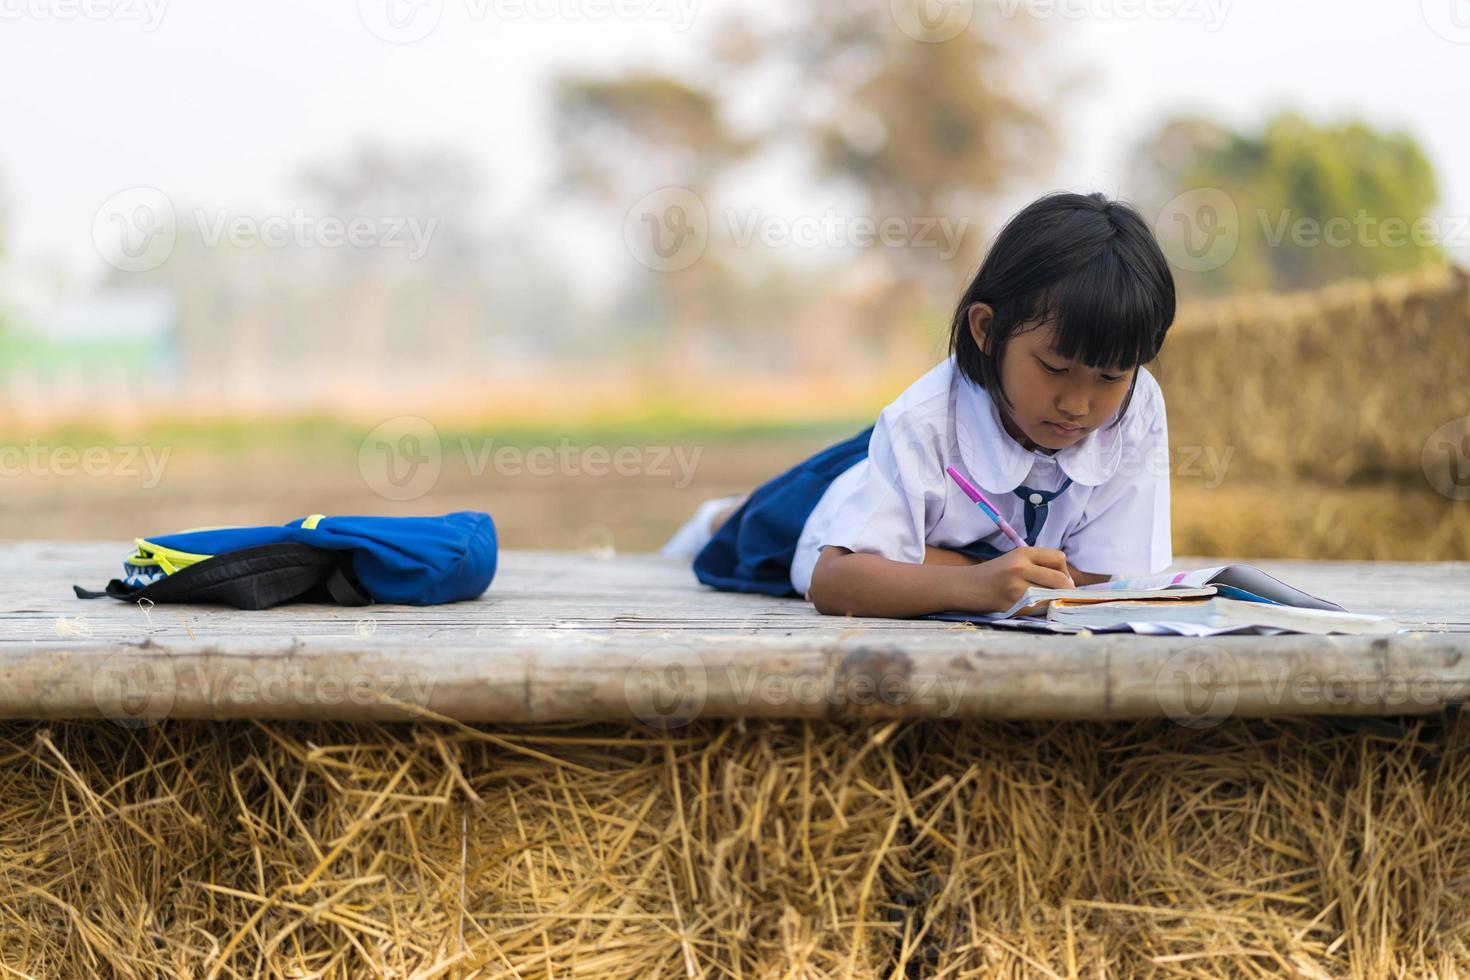 studente asiatico in uniforme che studia nella campagna della thailandia foto